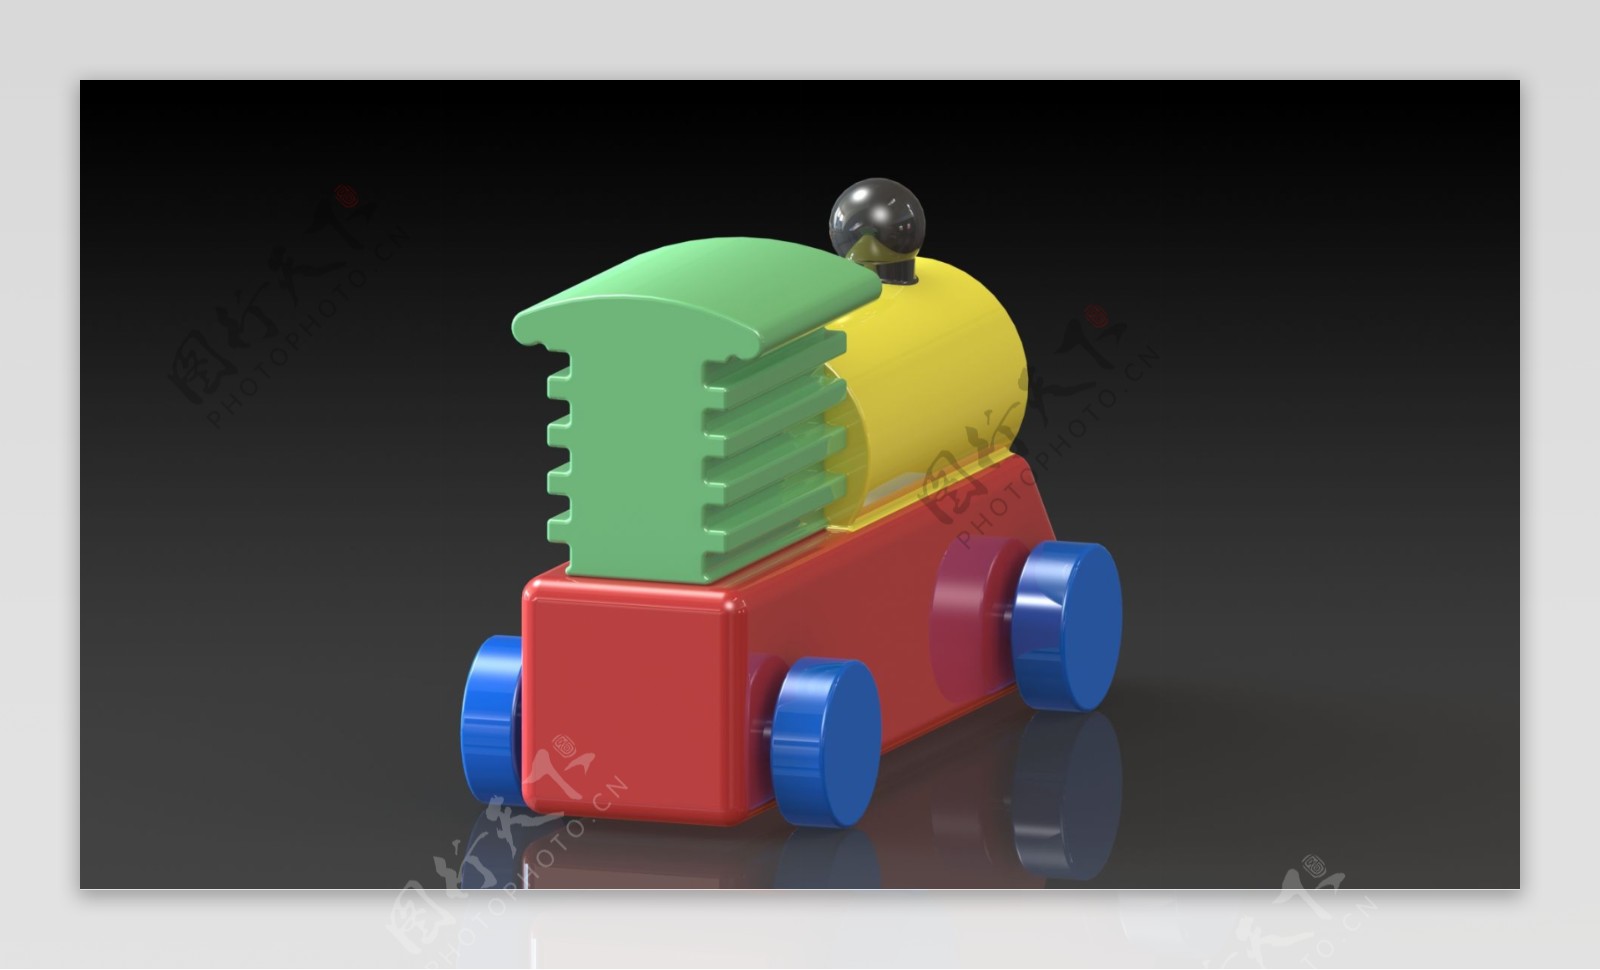 对于Ultimaker3D打印机玩具设计挑战机车引擎